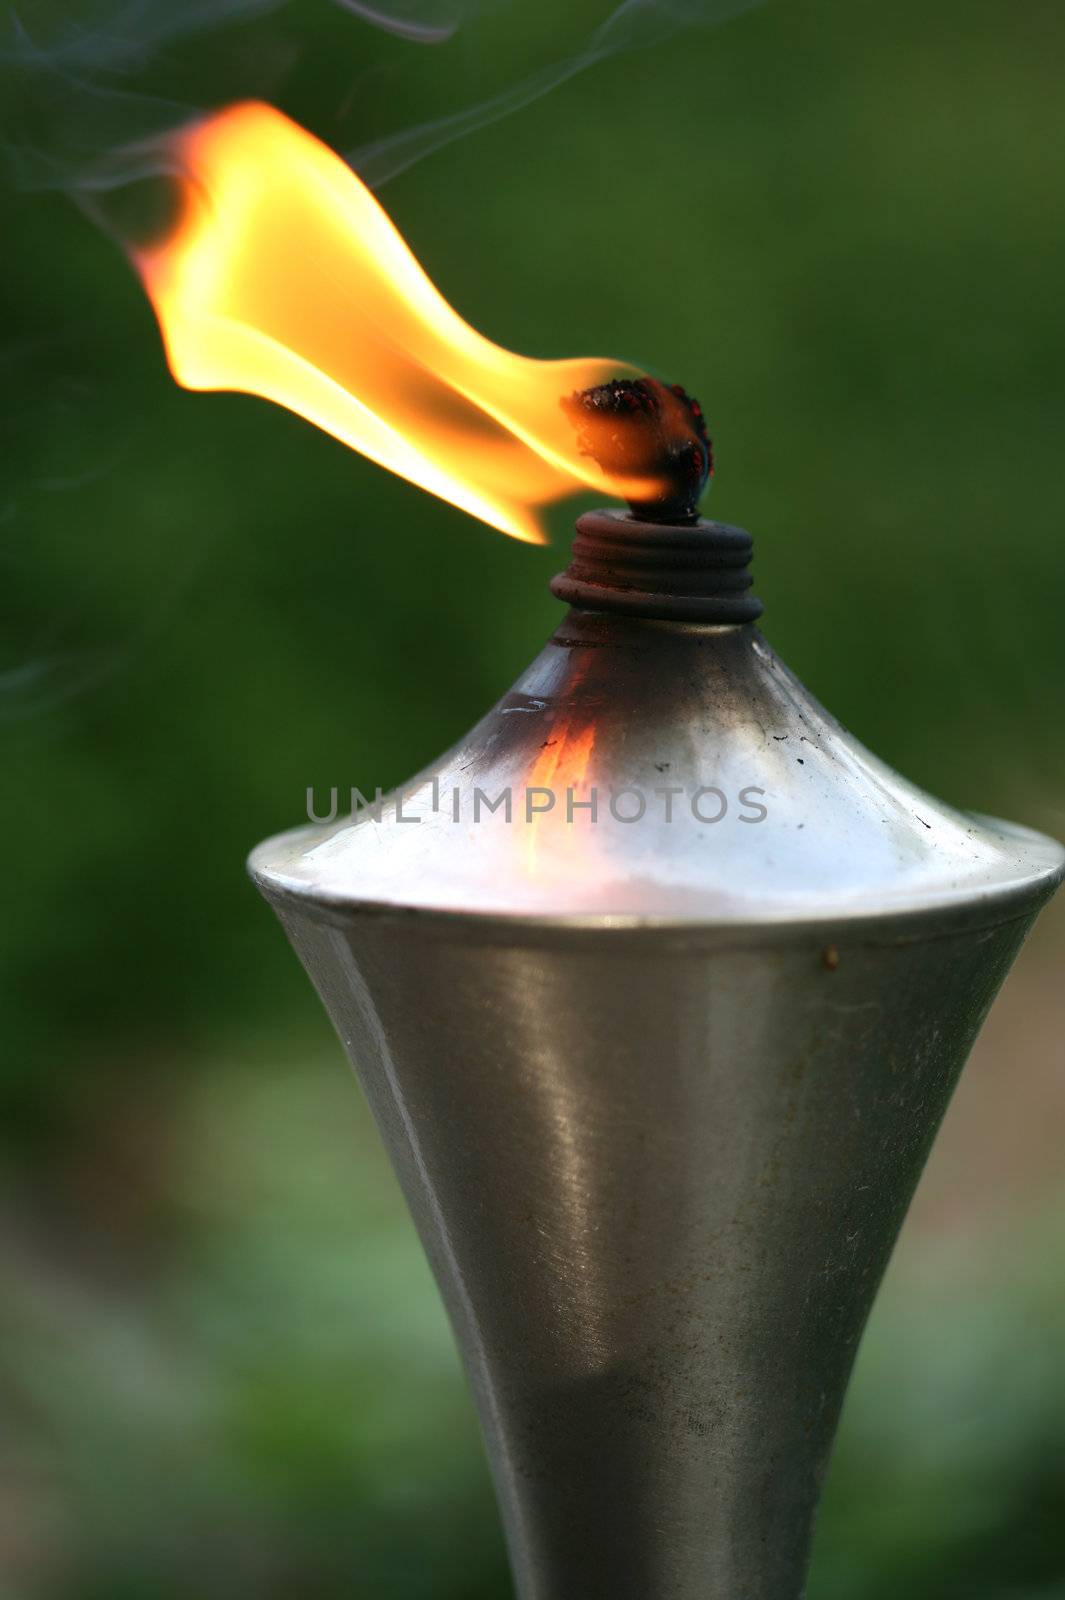 Lit torch with orange flame by jarenwicklund